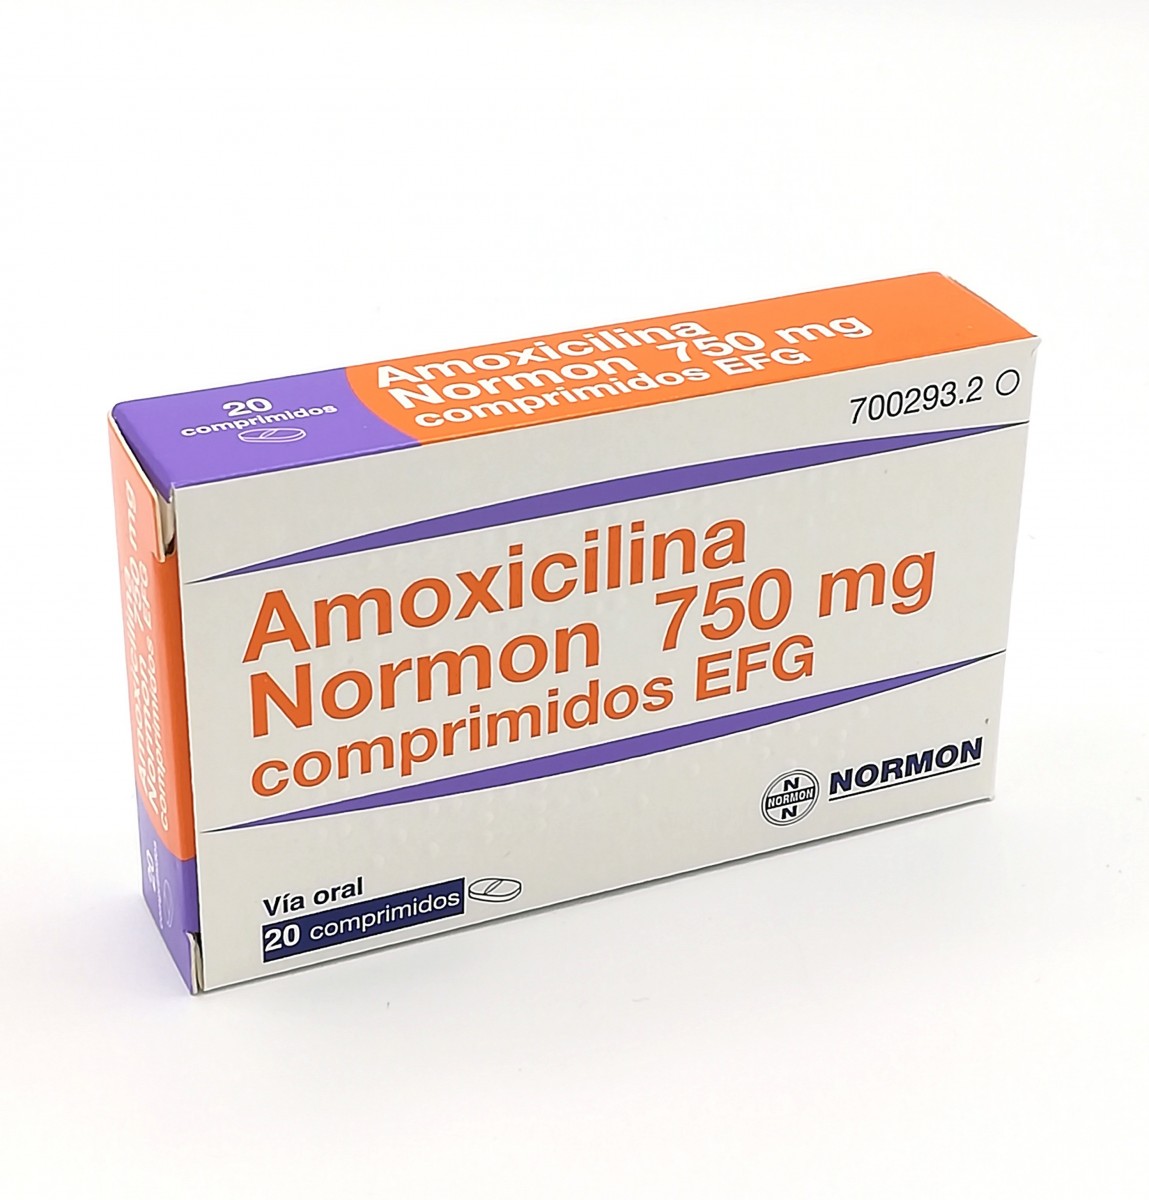 AMOXICILINA NORMON 750 MG COMPRIMIDOS EFG  , 500 comprimidos fotografía del envase.